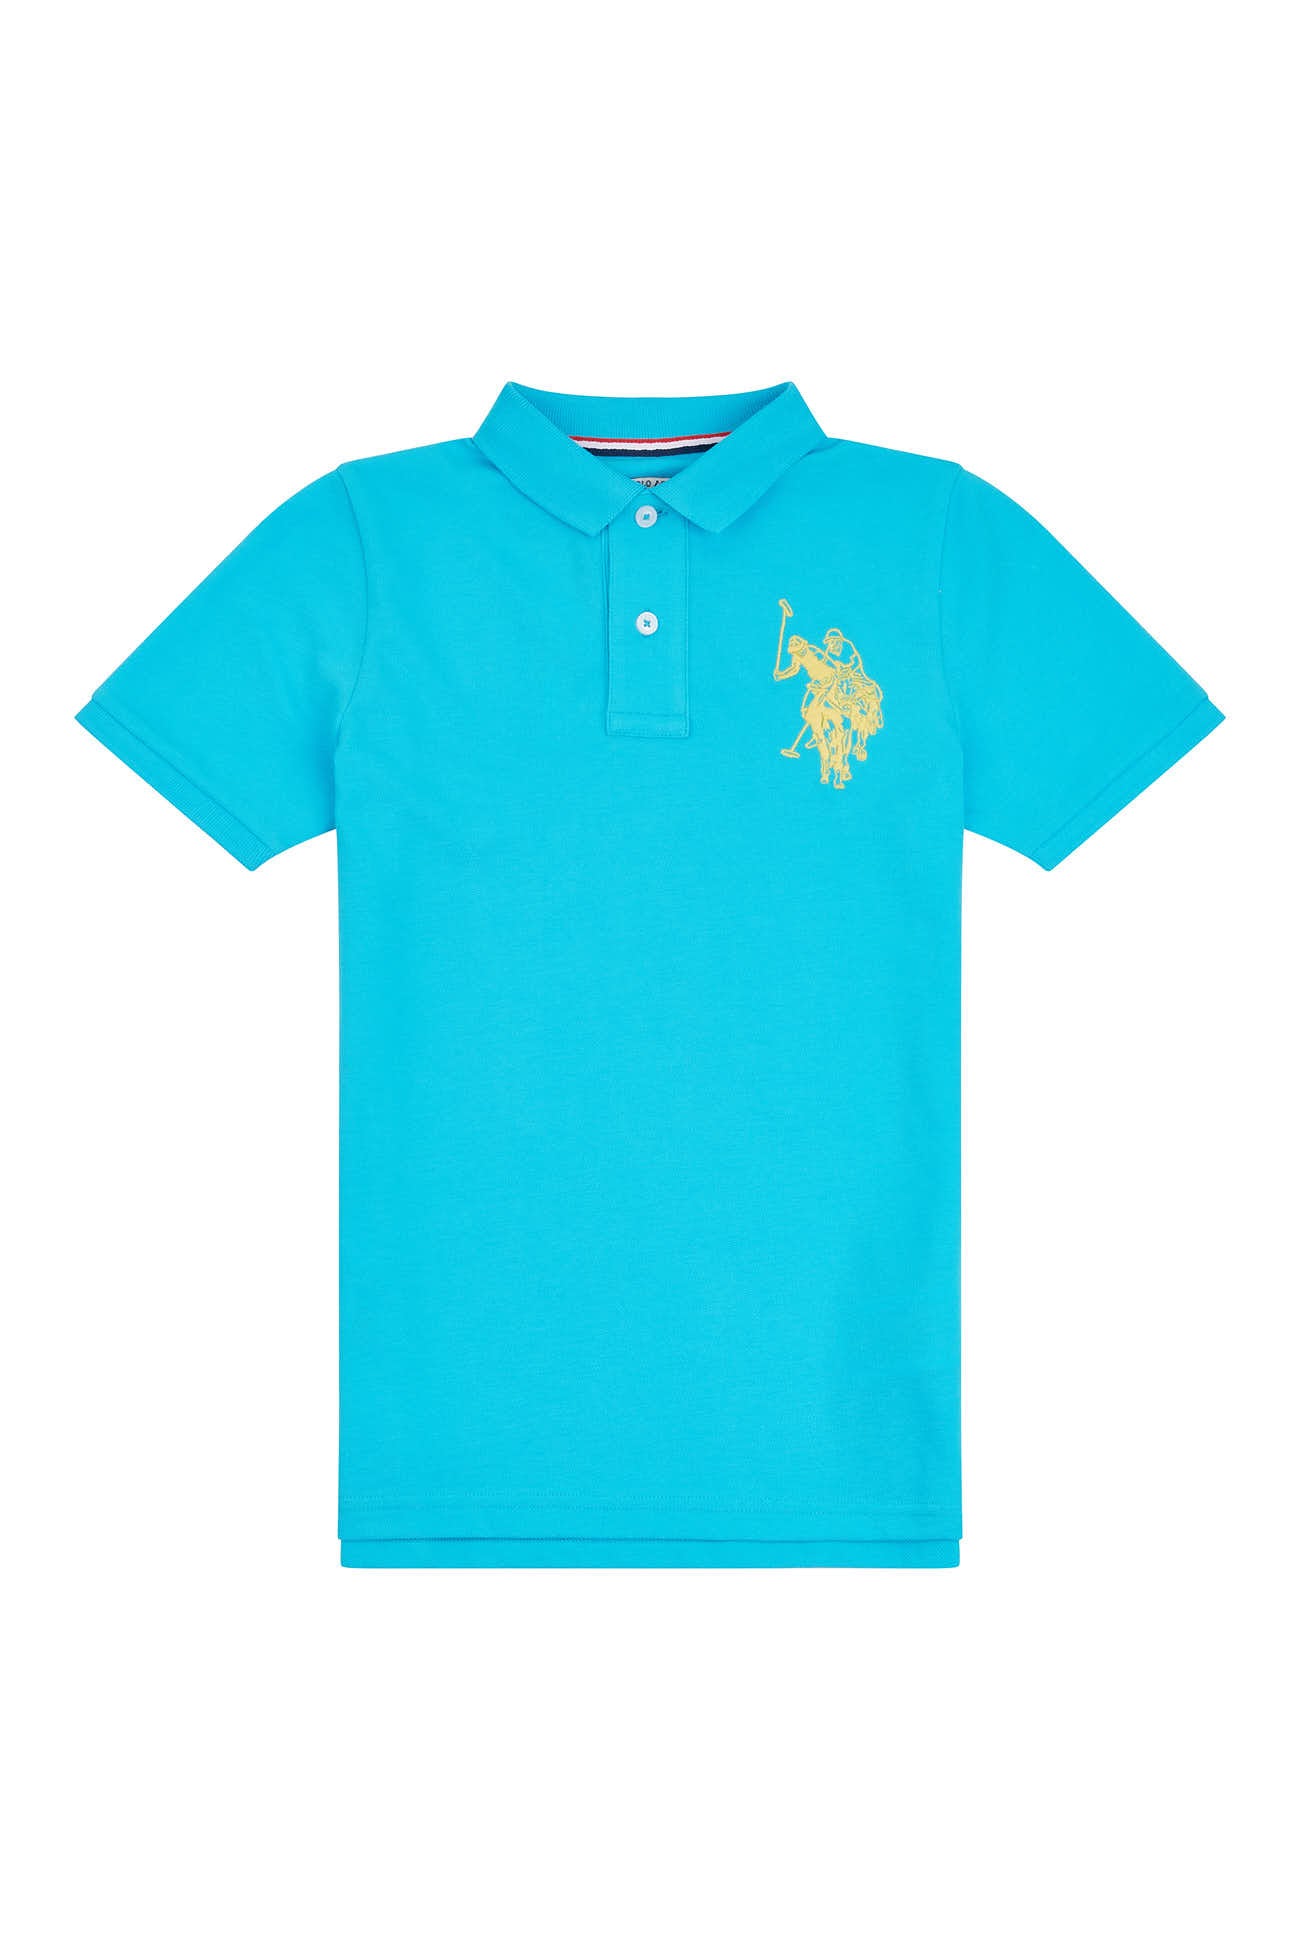 U.S. Polo Assn. Boys Large Logo Polo Shirt in Blue Atoll